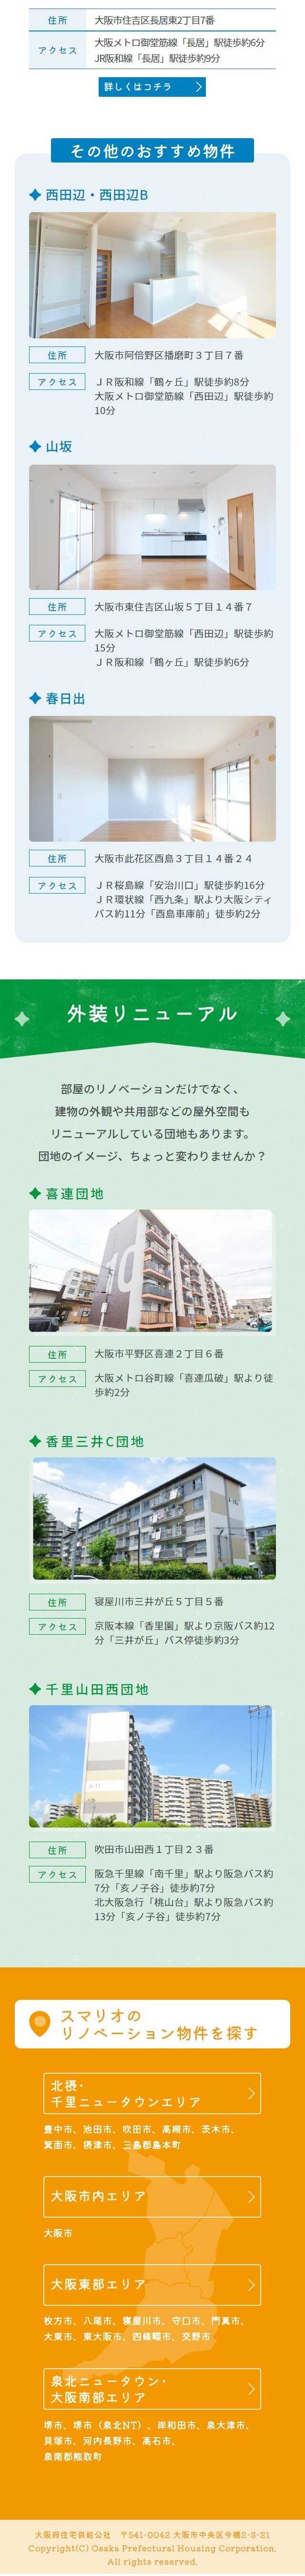 大阪で人気の団地リノベーション賃貸物件特集_sp_2